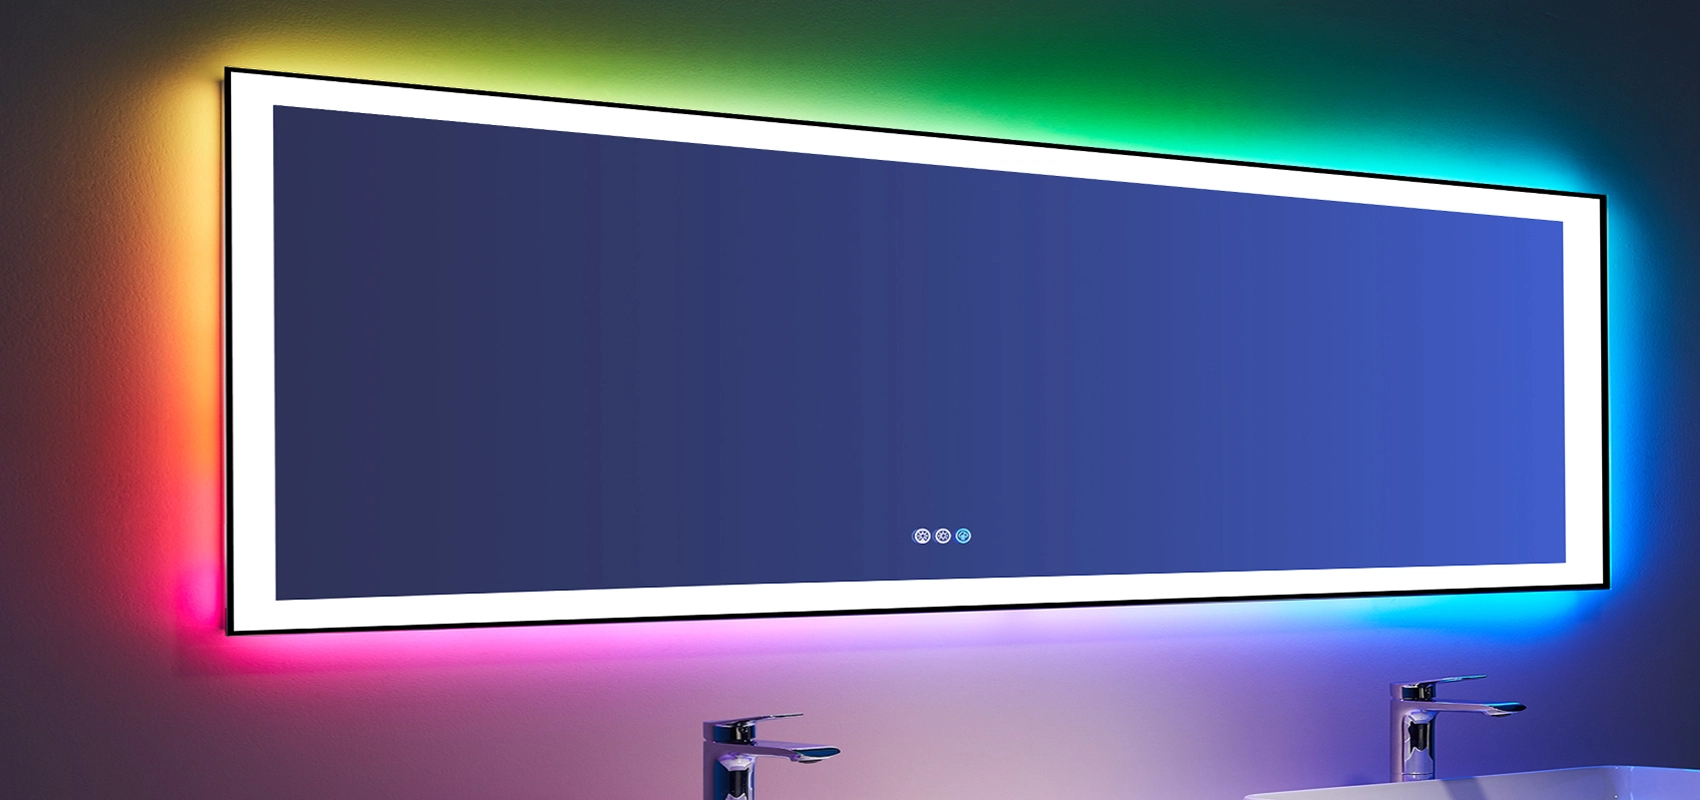 Mitkä ovat RGB-kylpyhuonepeilien edut?